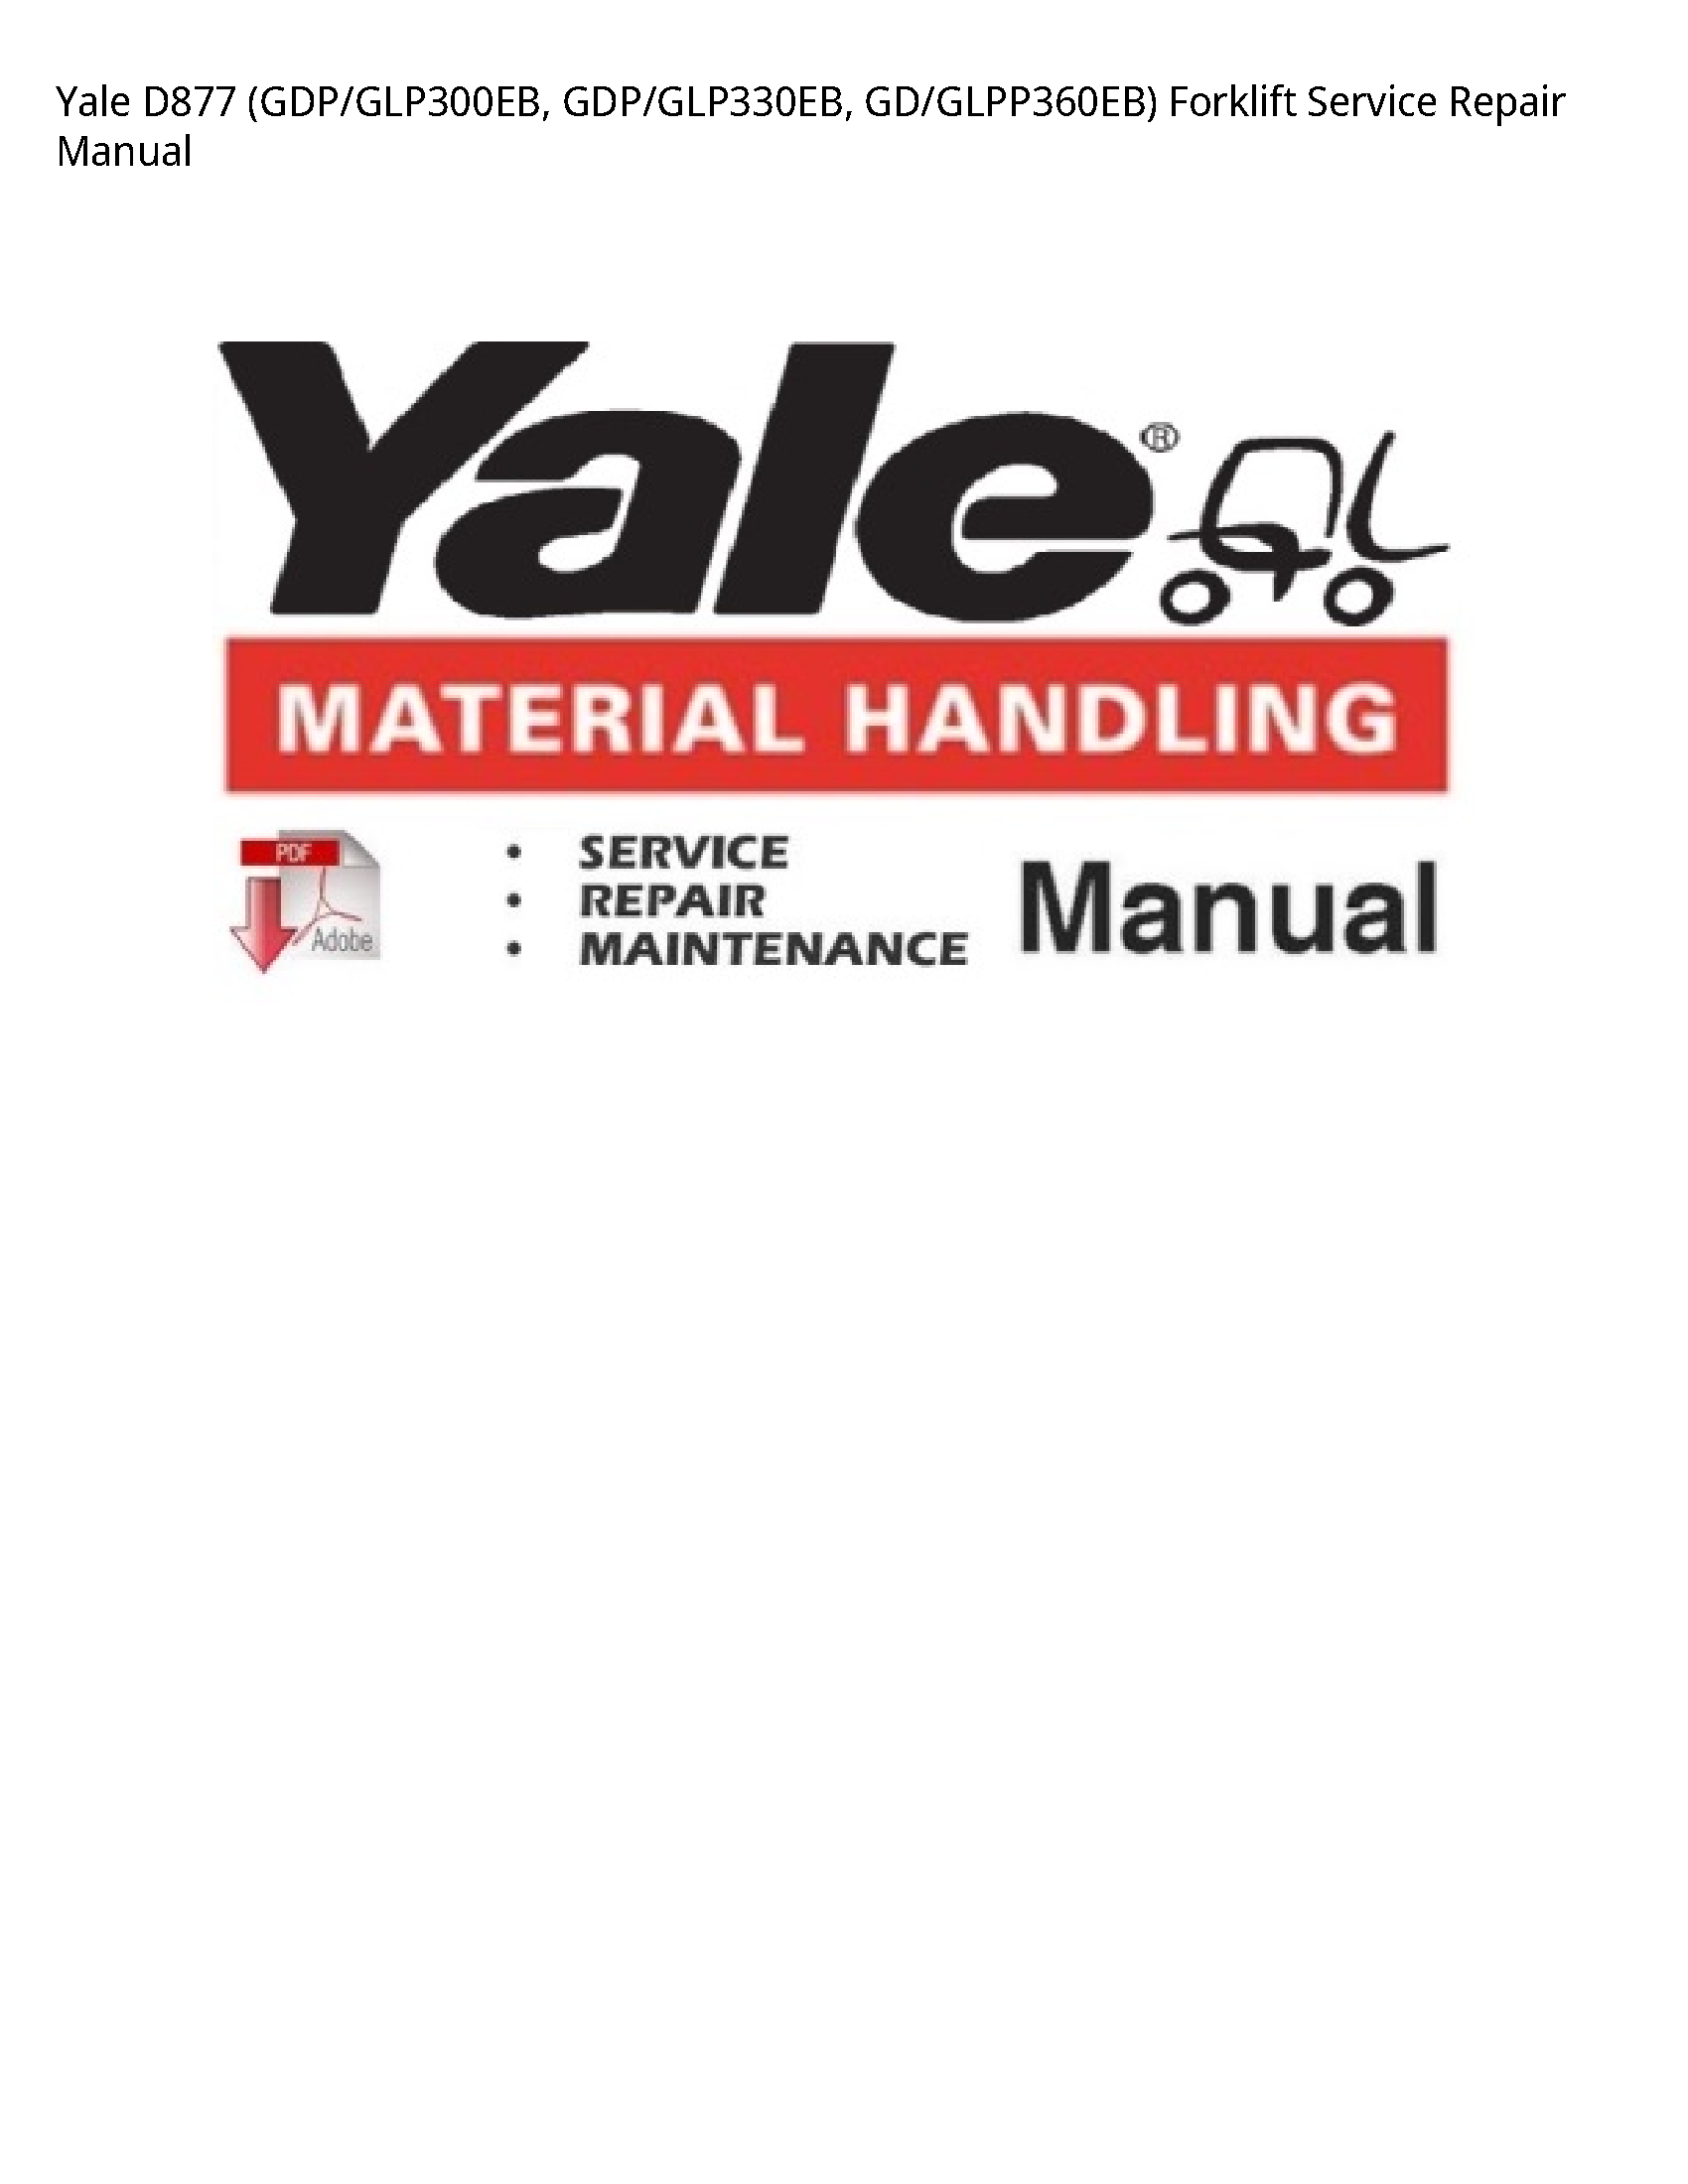 Yale D877 Forklift manual